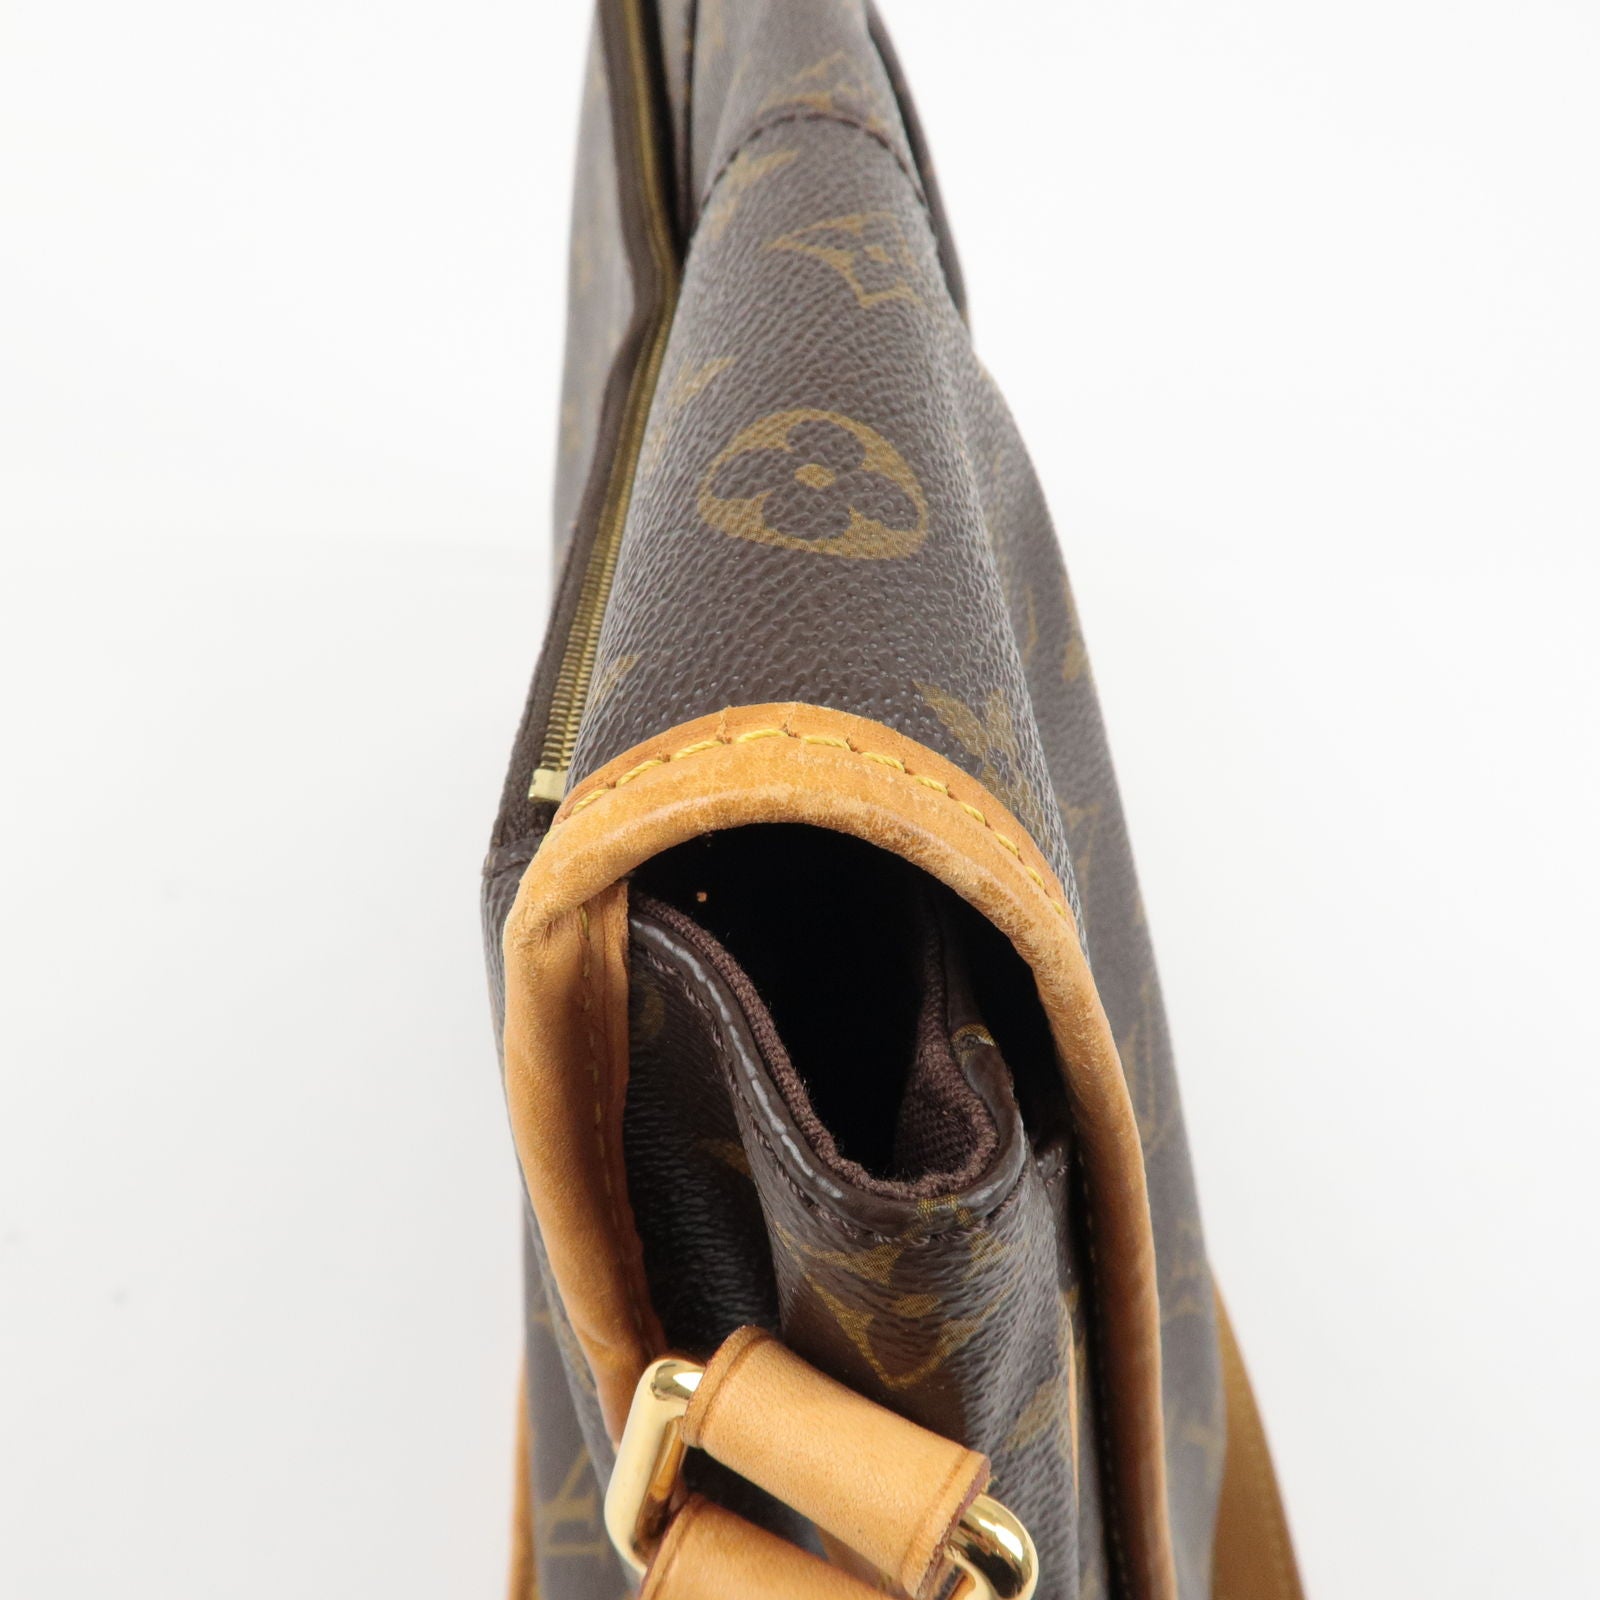 Bag - Shoulder - MM - Vuitton - Monogram - Menilmontant - Louis